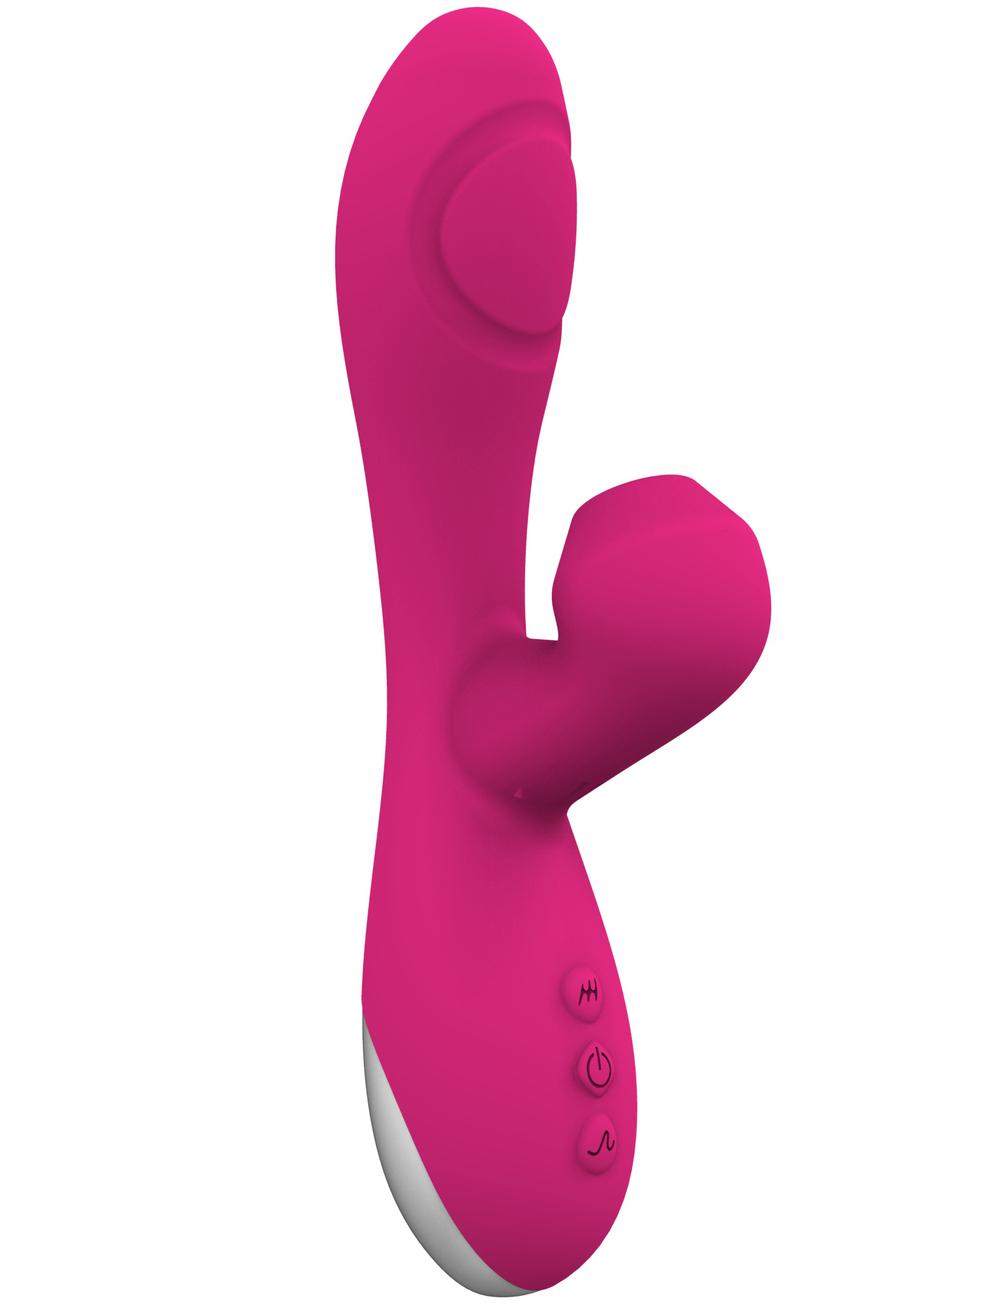 Romant Flap vibrátor rabbit s poklepem a tlakovým stimulátorem na klitoris růžový ROMANT